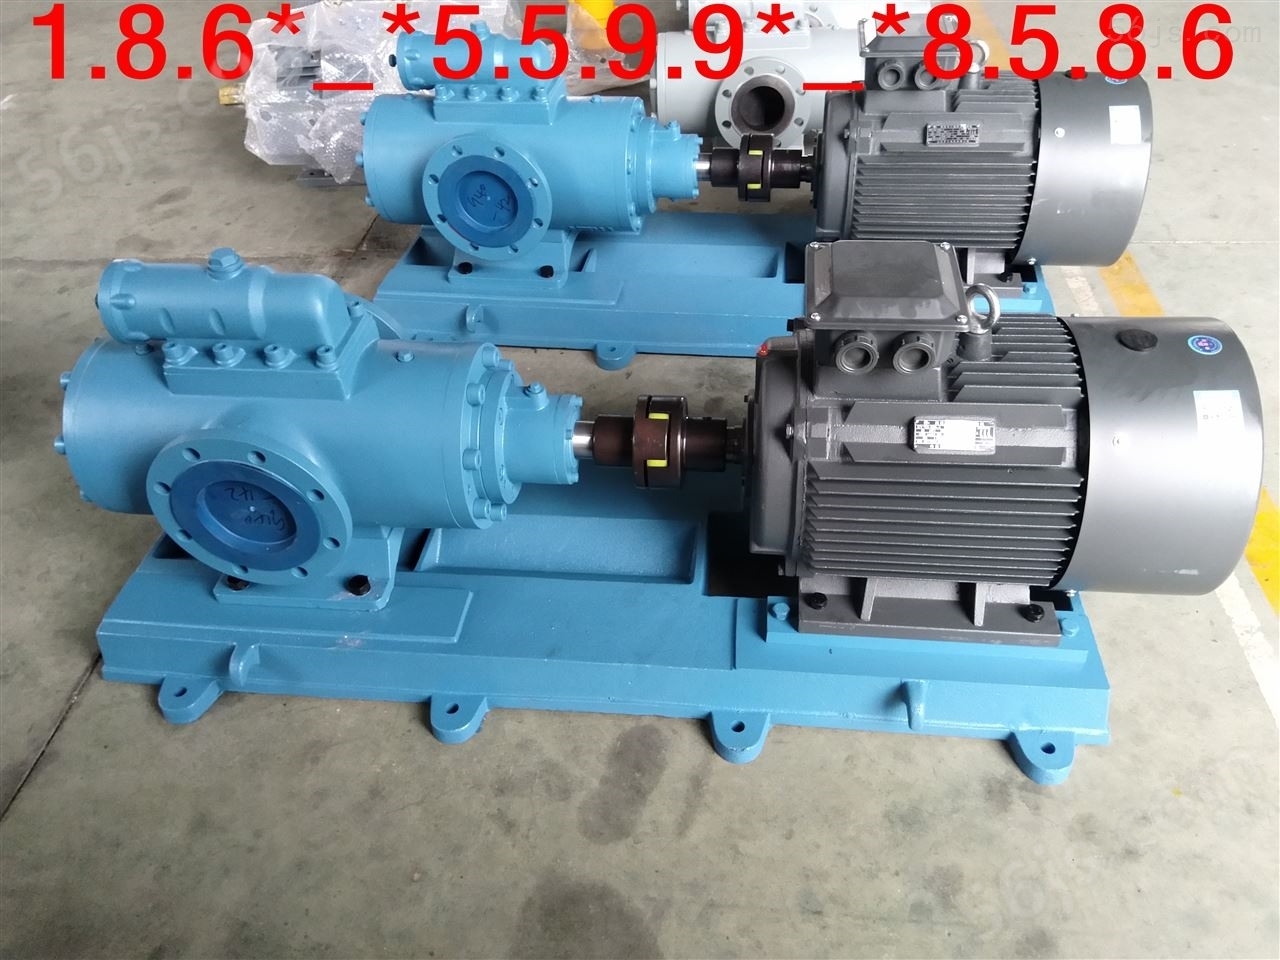 螺杆泵TRQ5000R44U7.14-V.W203-315S黄山铁人泵业三螺杆泵hsnh